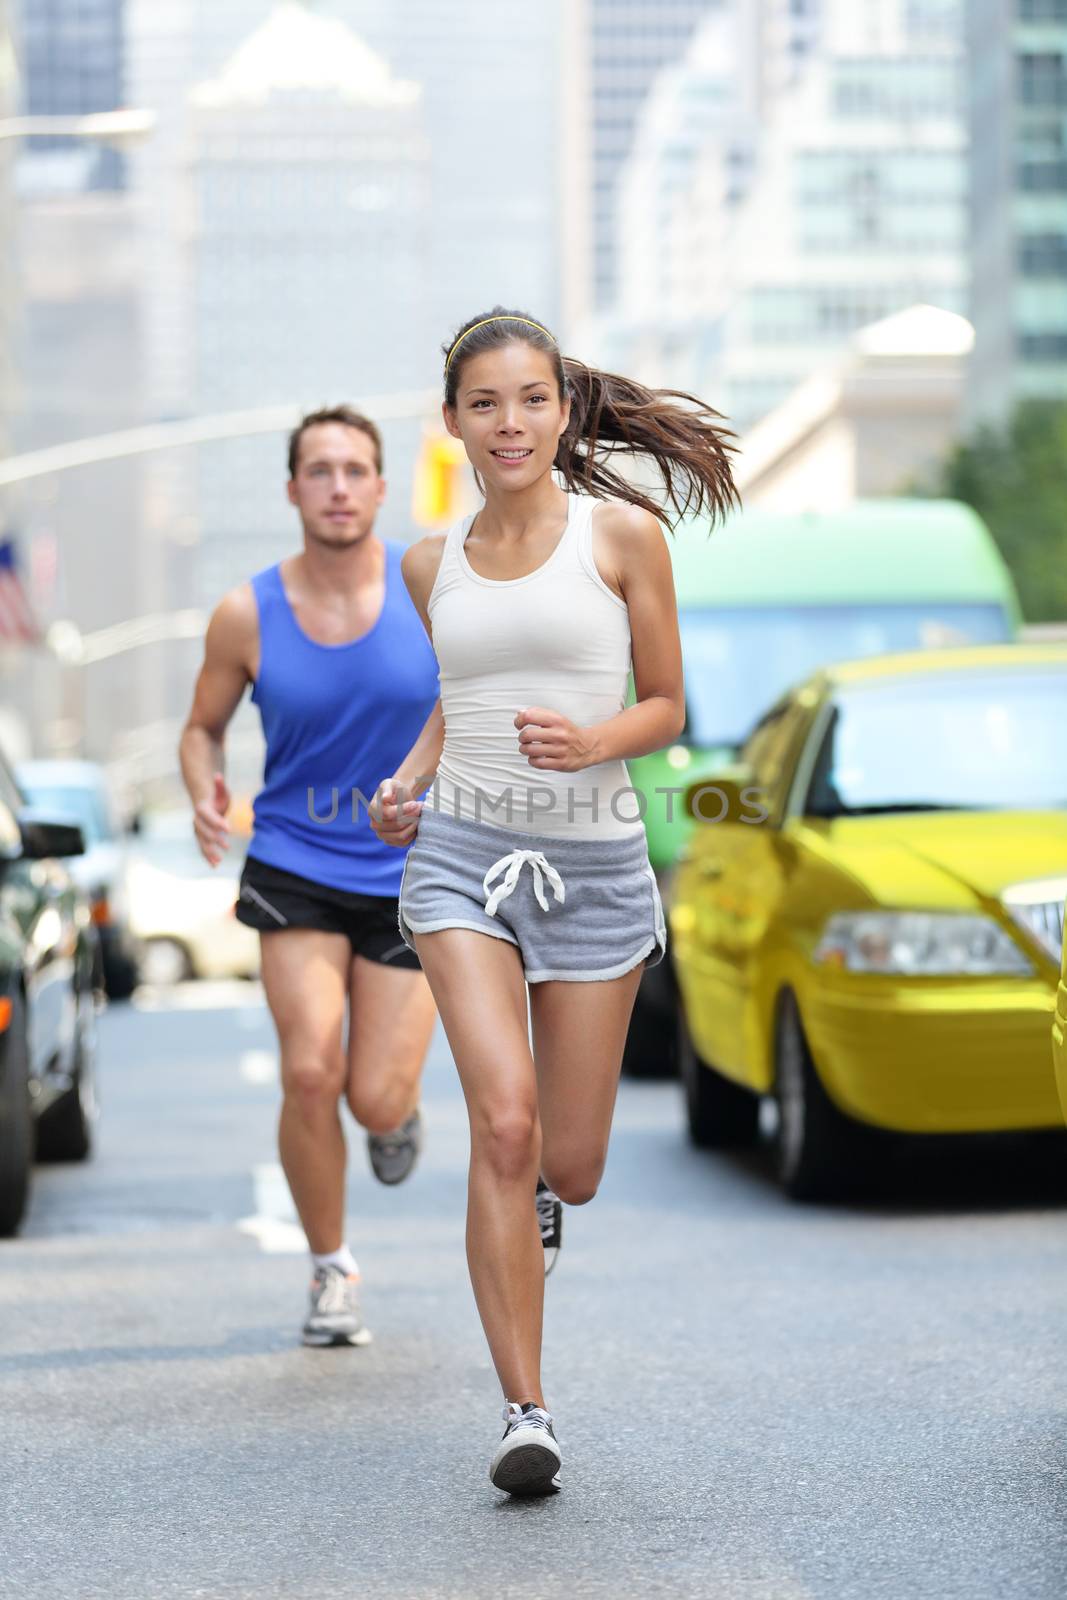 New York City NYC runners - urban people running by Maridav